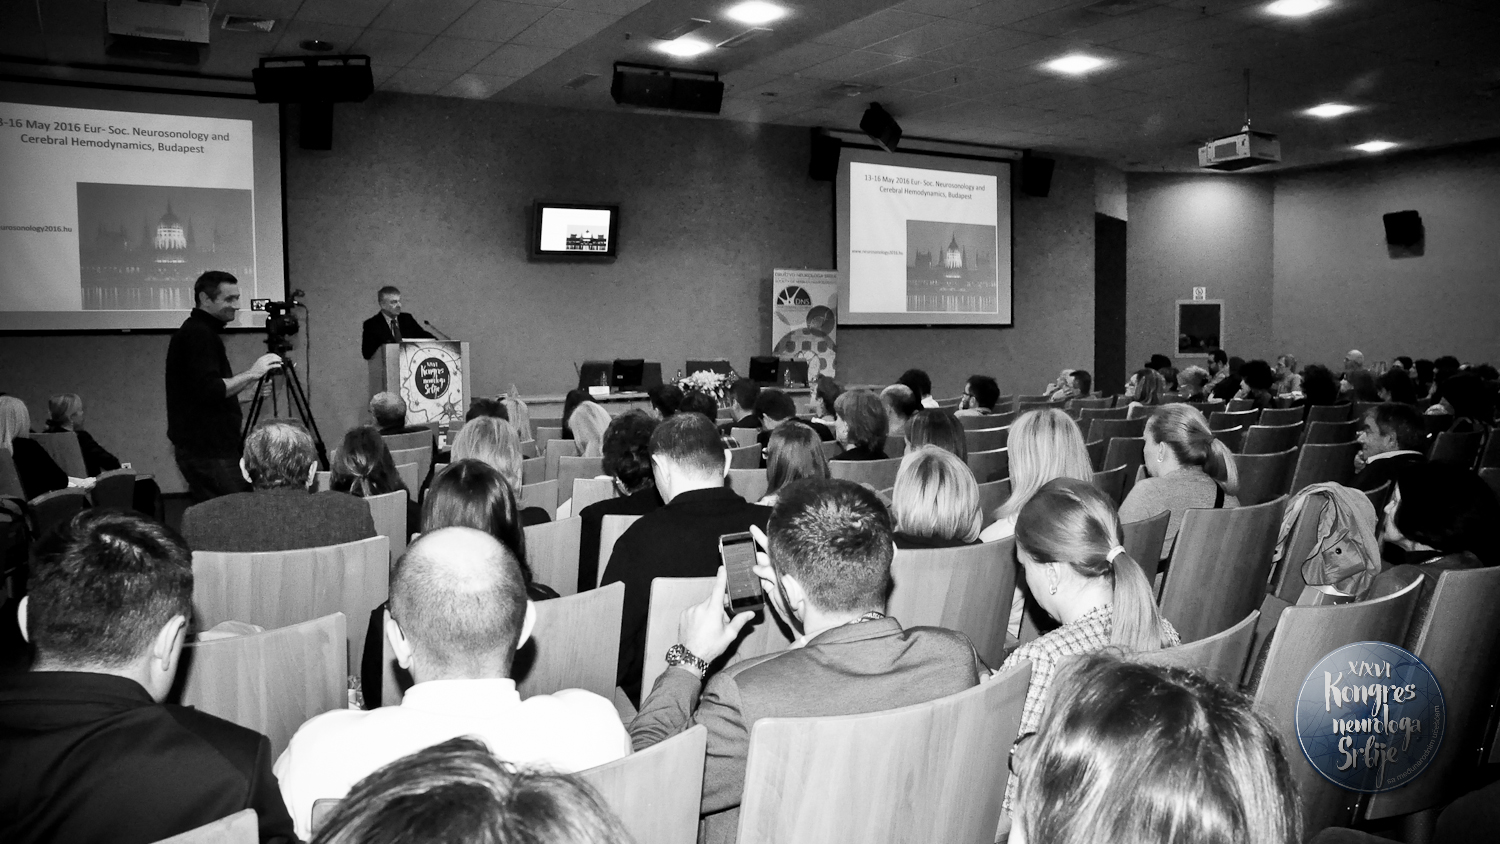 X/XVI Kongres neurologa Srbije sa međunarodnim učešćem